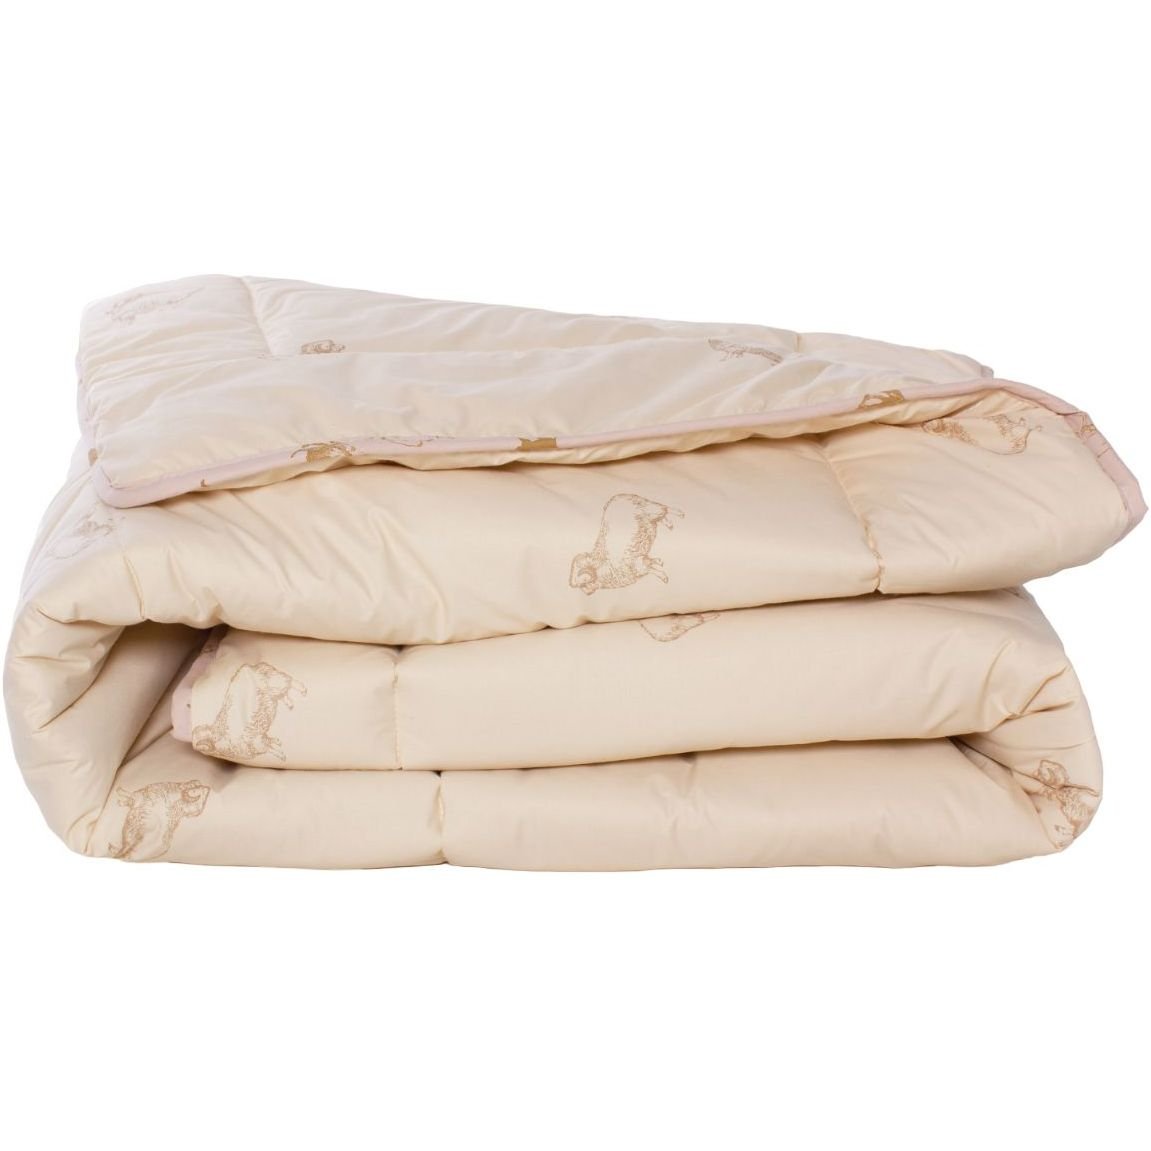 Одеяло шерстяное MirSon Gold Camel №024, зимнее, 220x240 см, кремовое - фото 1